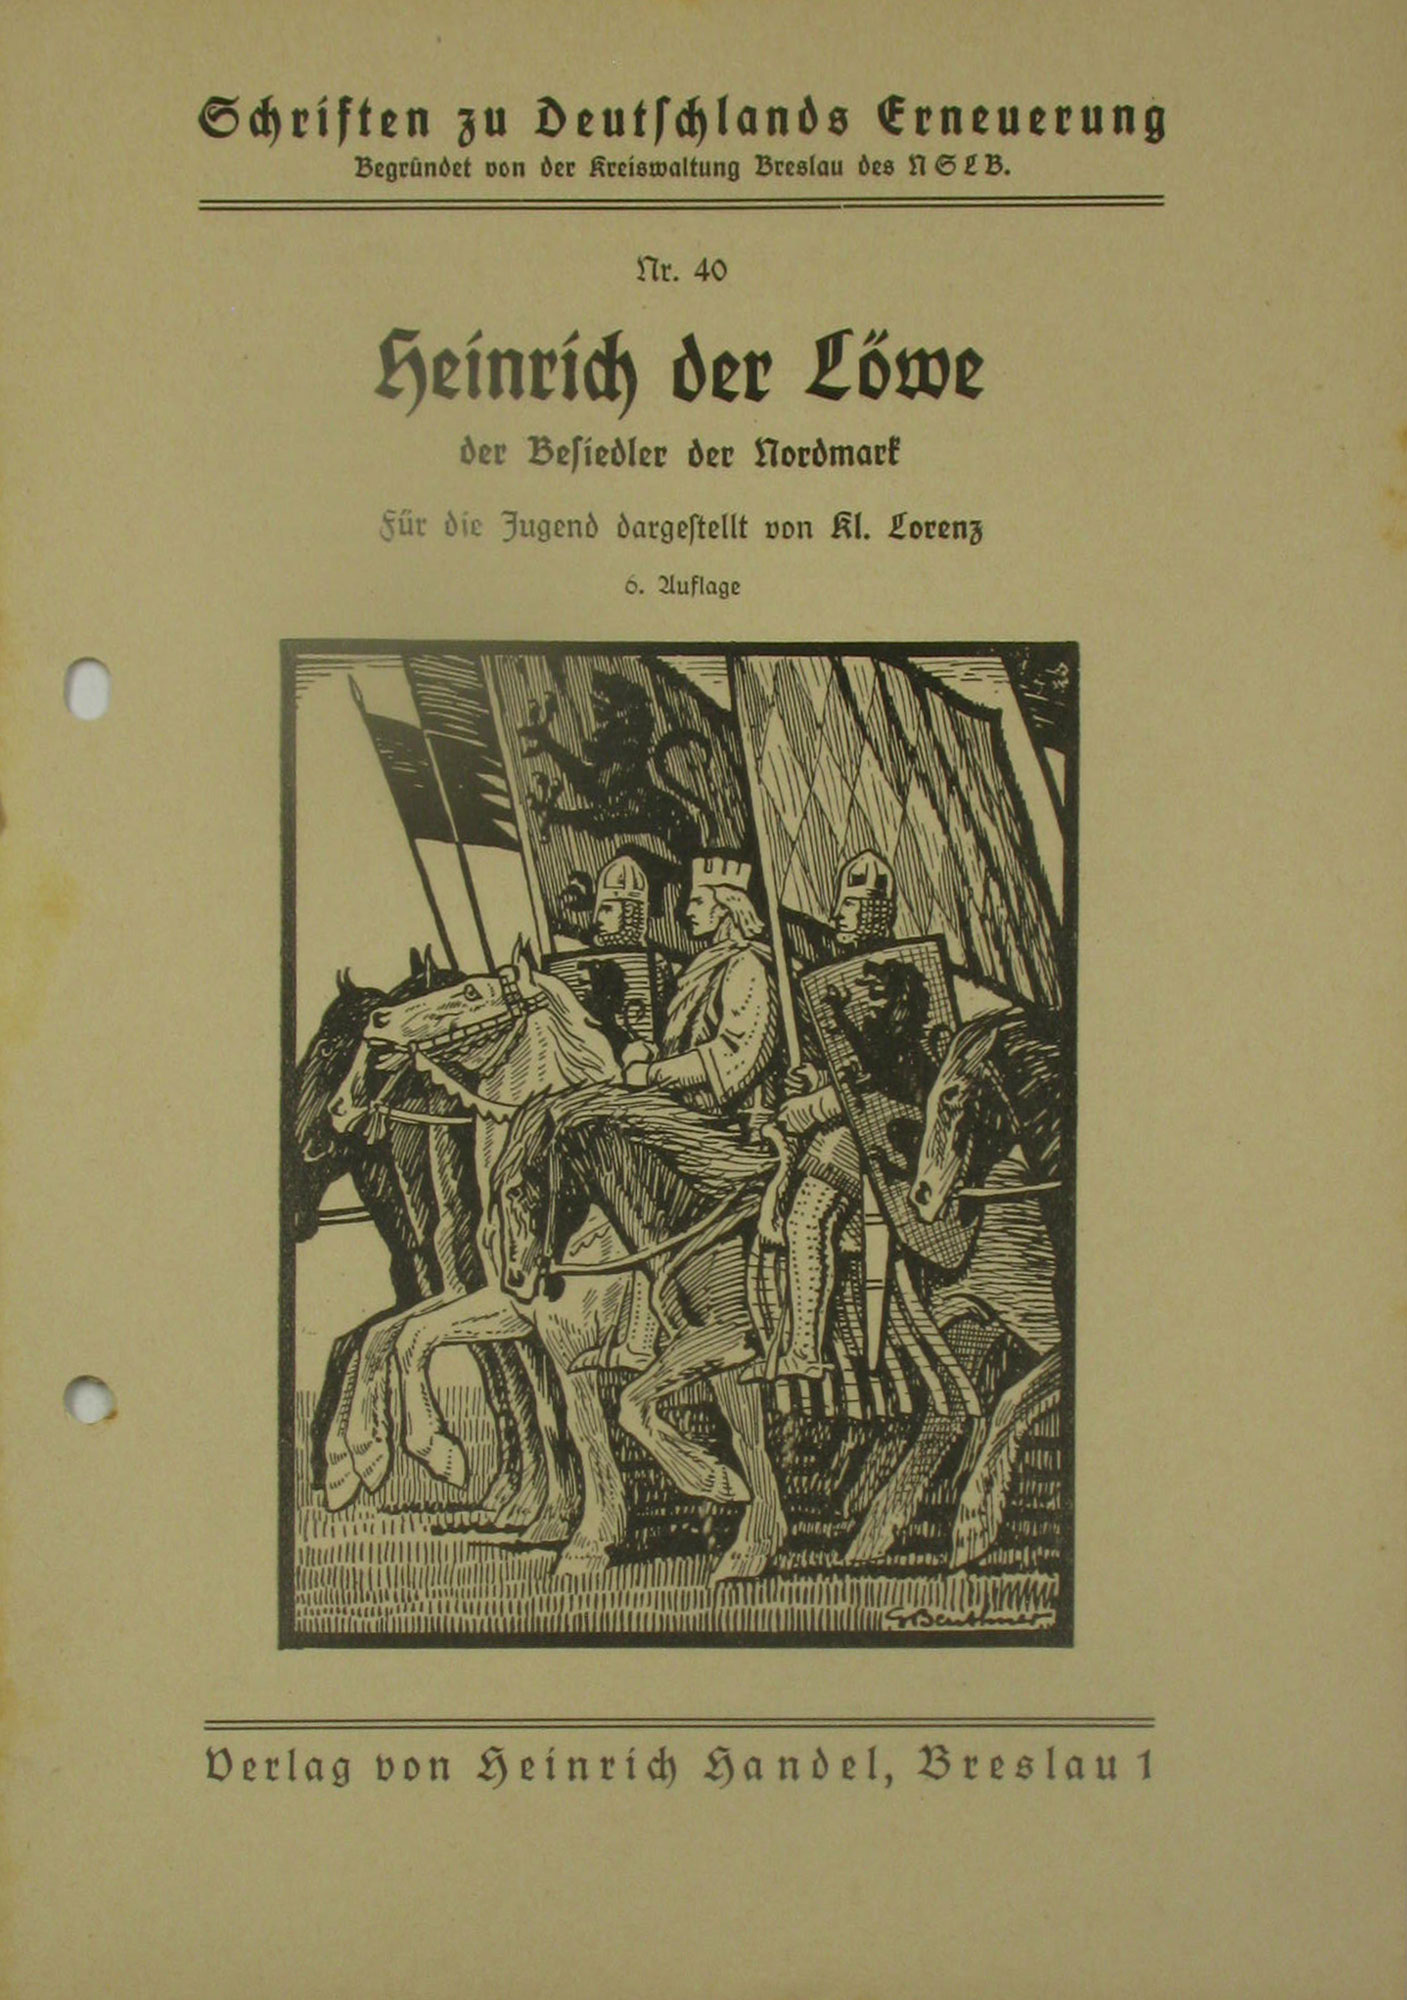 Lorenz, Kl.:  Heinrich der Löwe, der Besiedler der Nordmark. Schriften zu Deutschlands Erneuerung Nr. 40. 